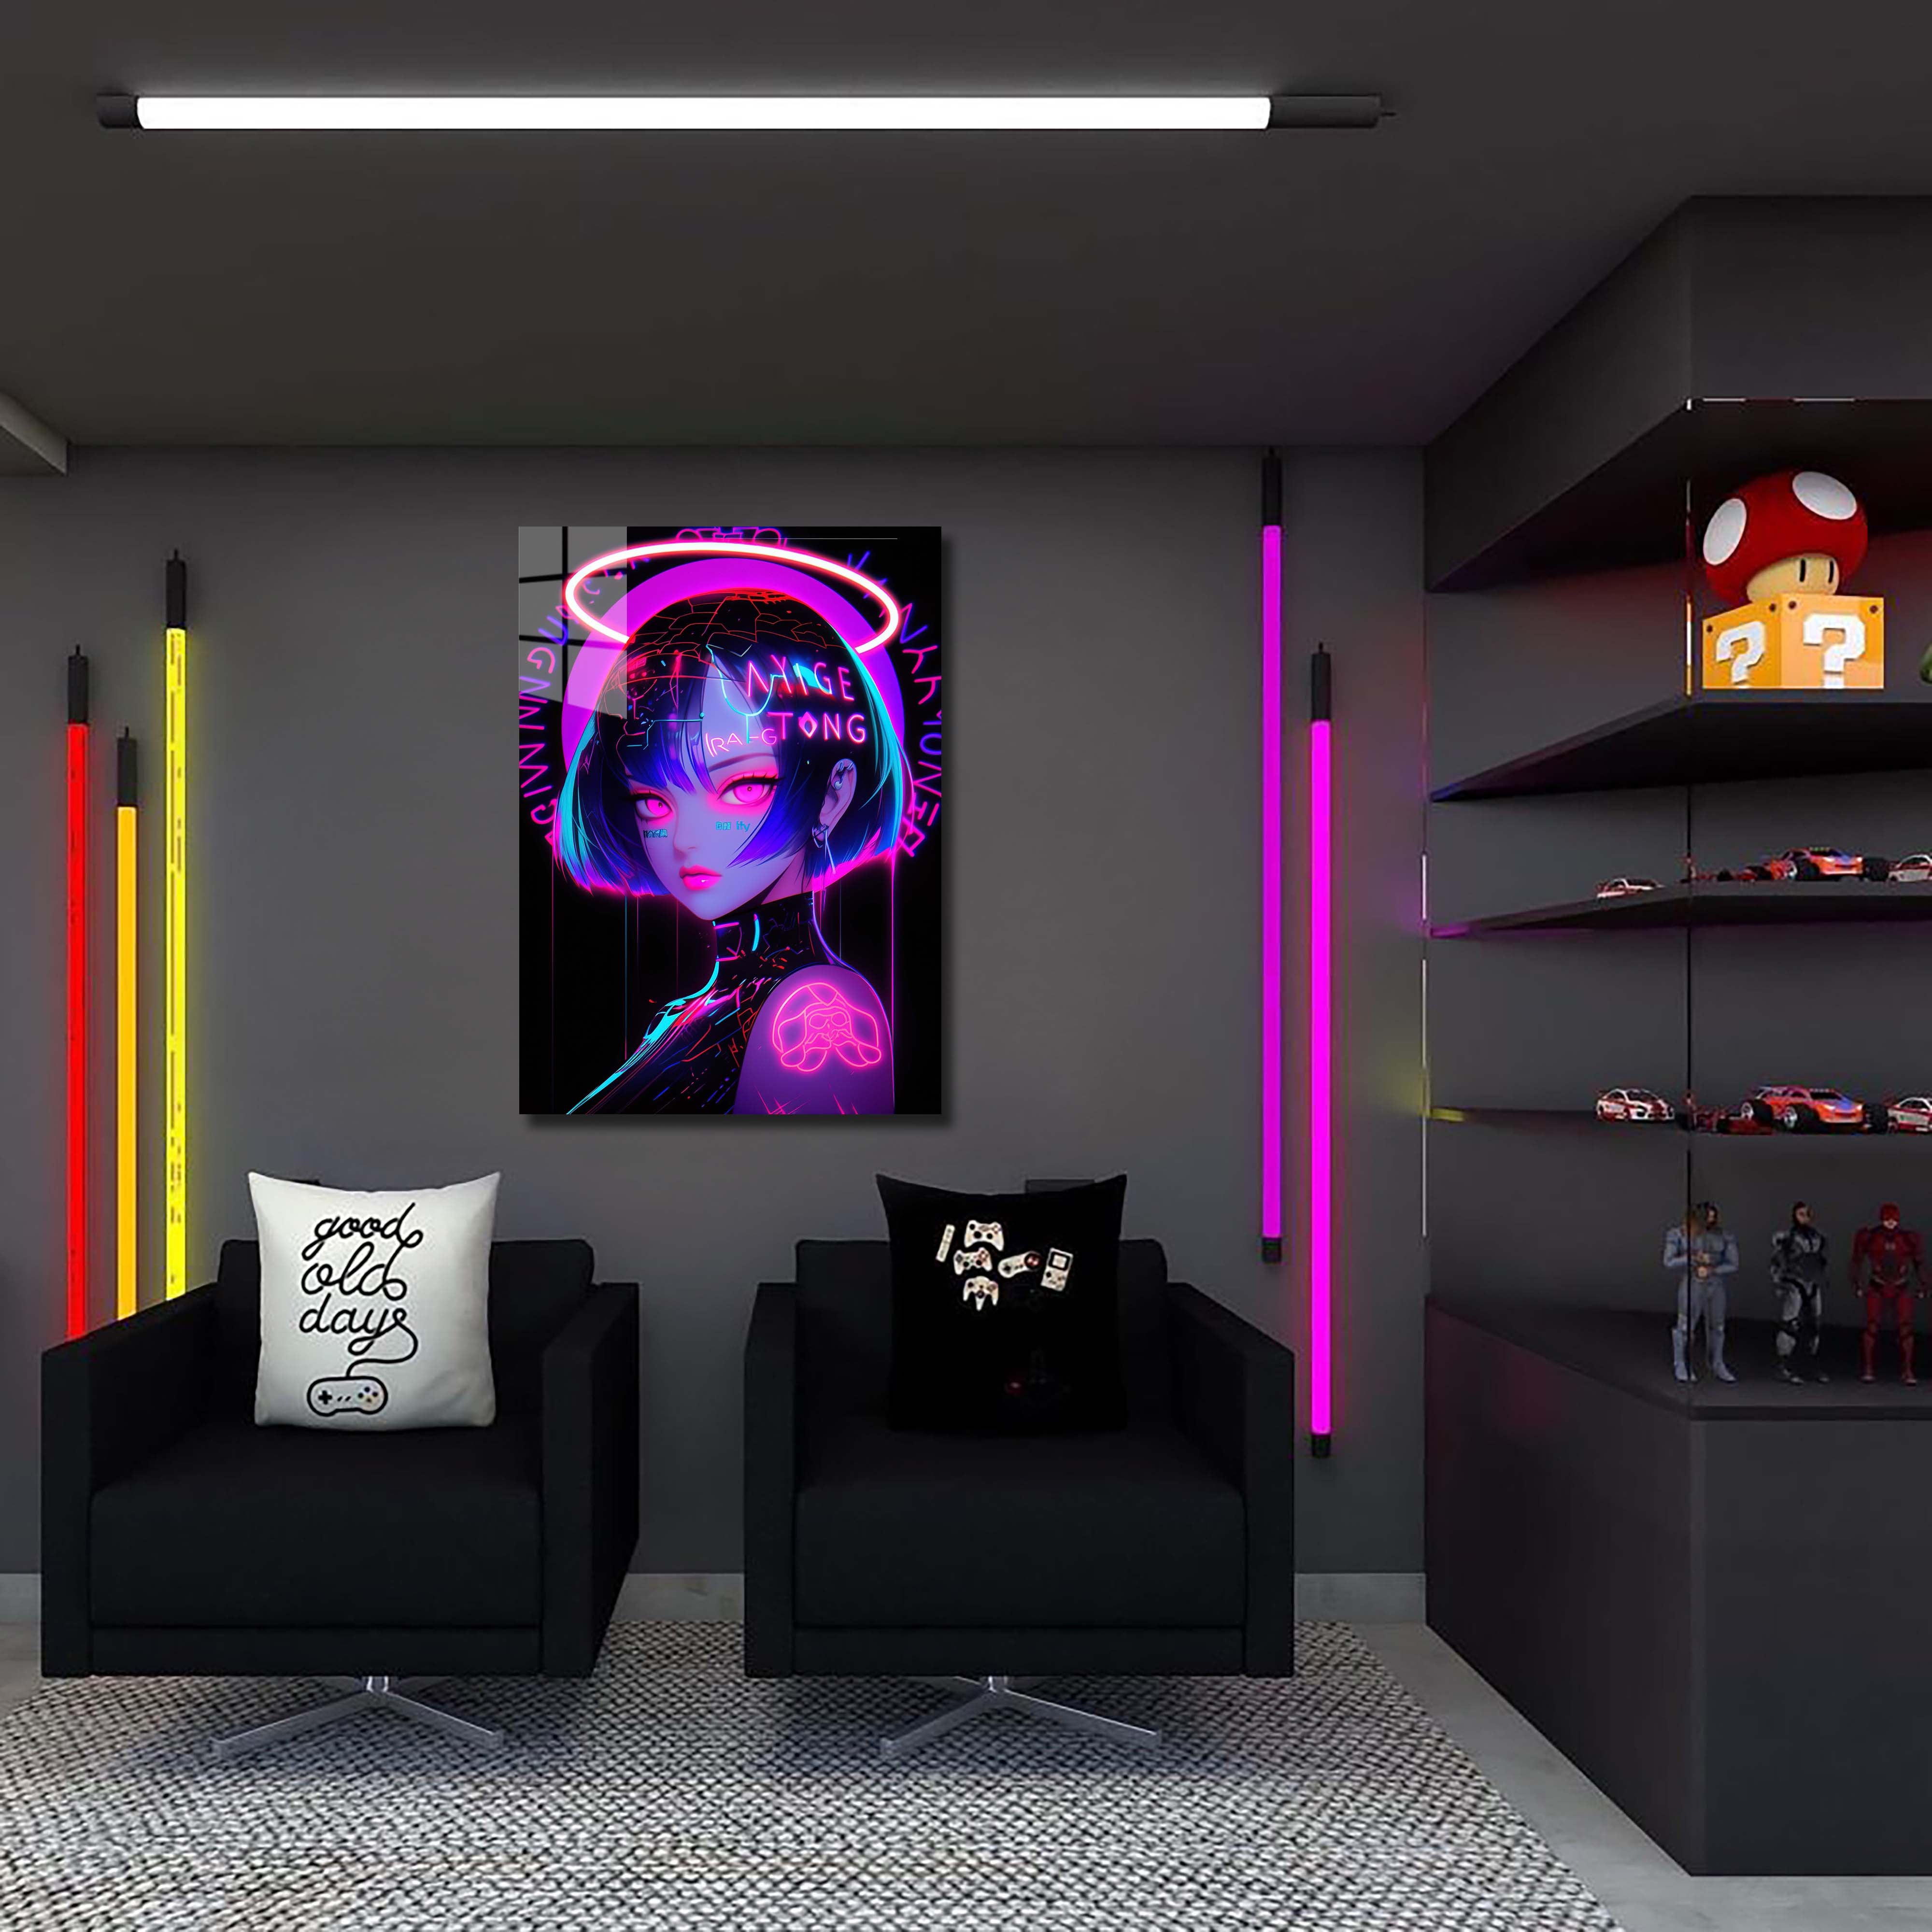 Neon Glow II-designed by @Riiskaart